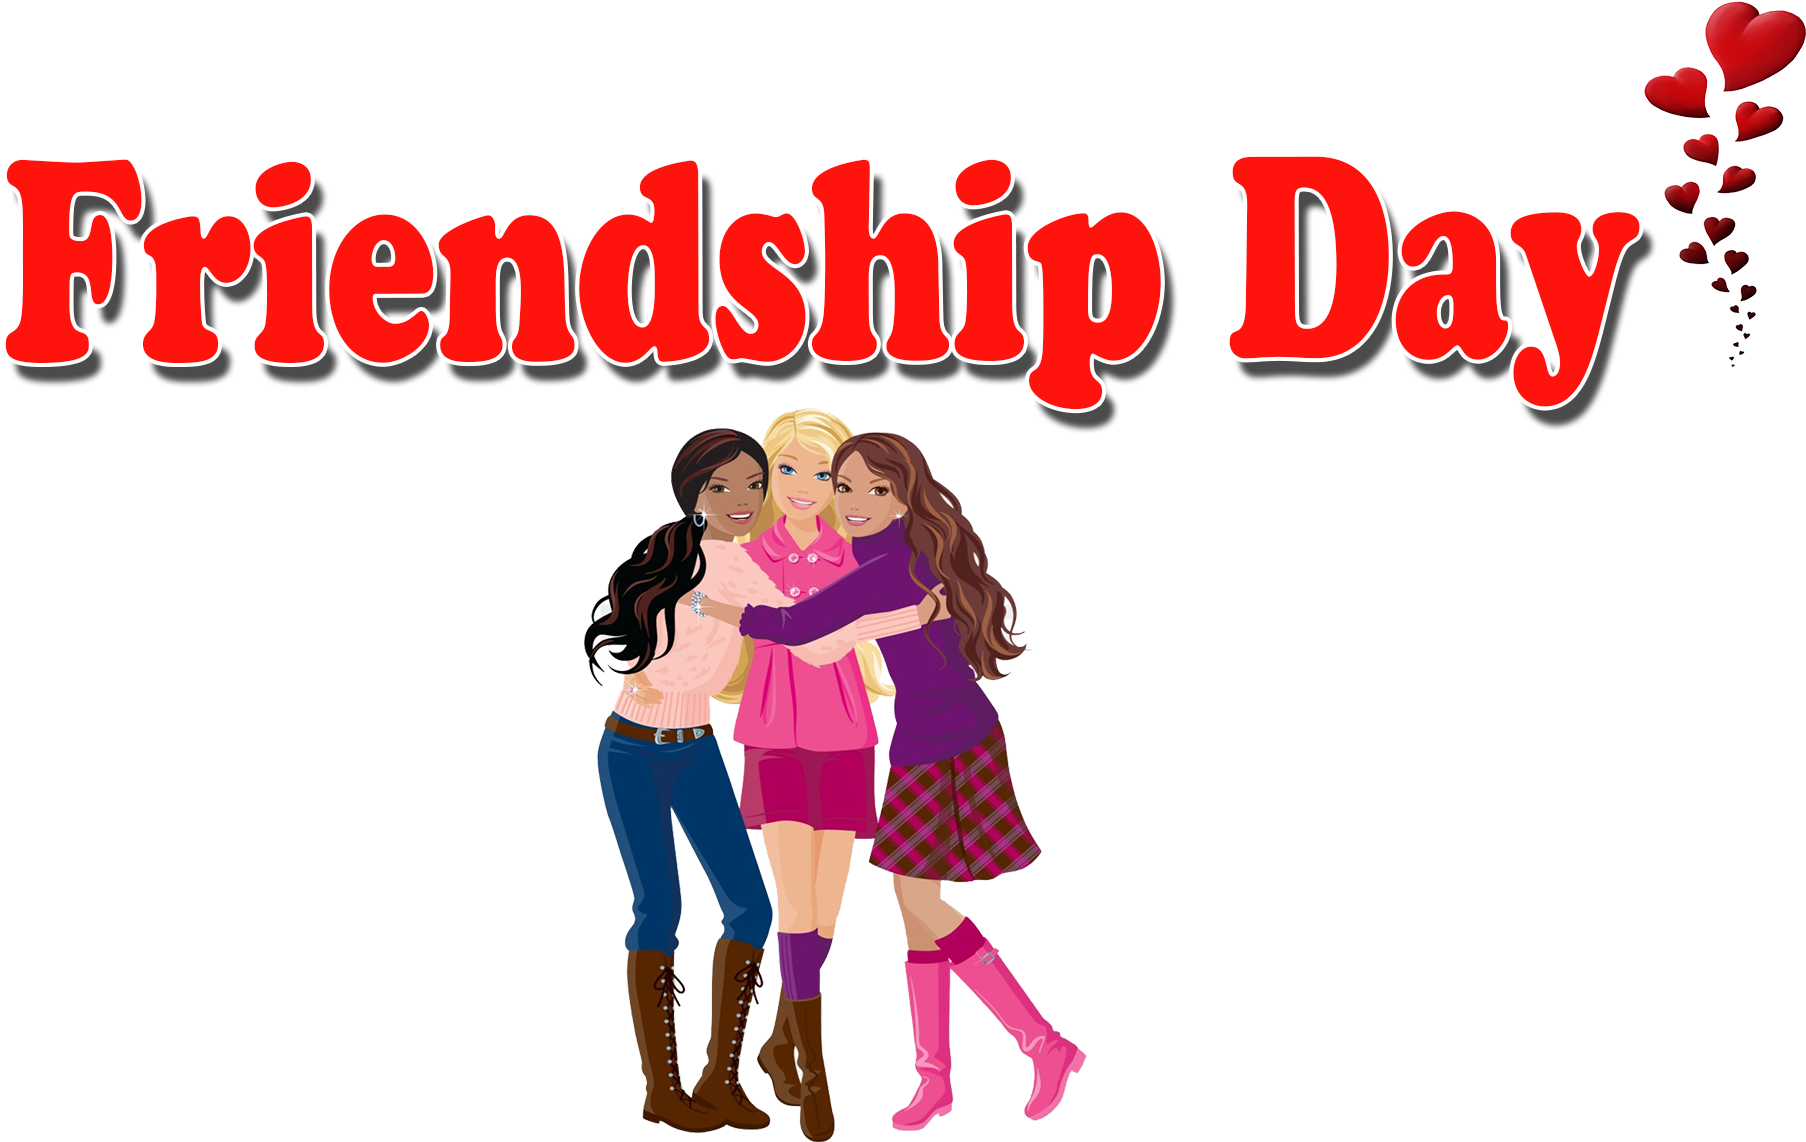 Celebrating Friendship Day